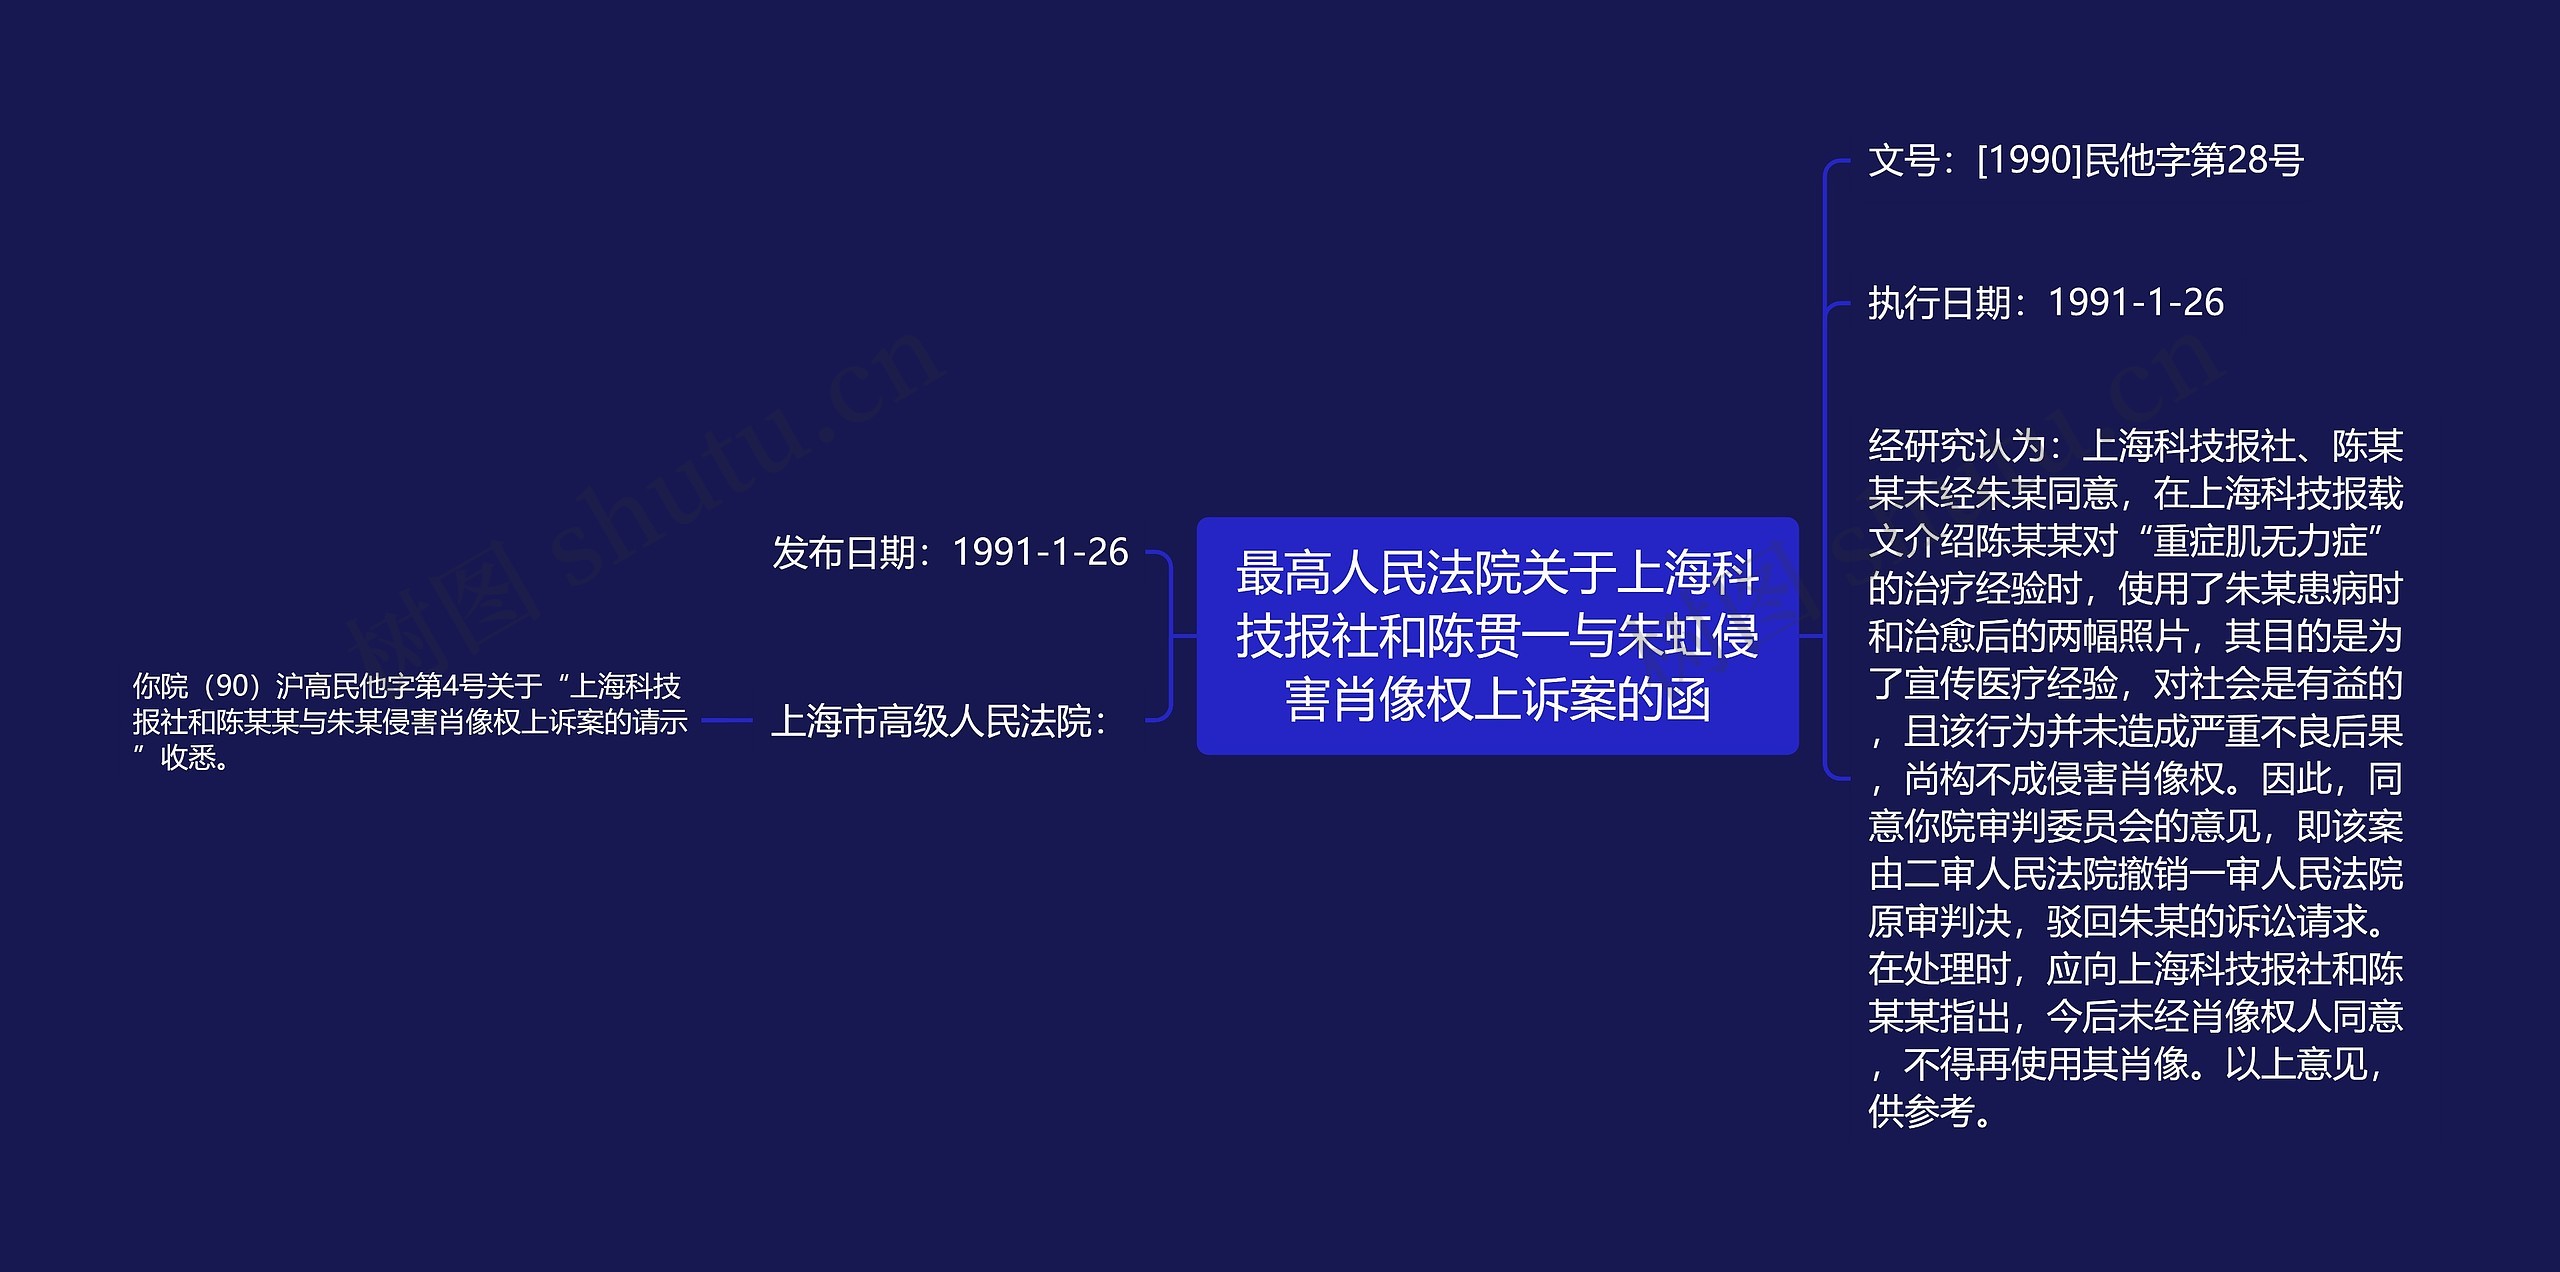 最高人民法院关于上海科技报社和陈贯一与朱虹侵害肖像权上诉案的函思维导图